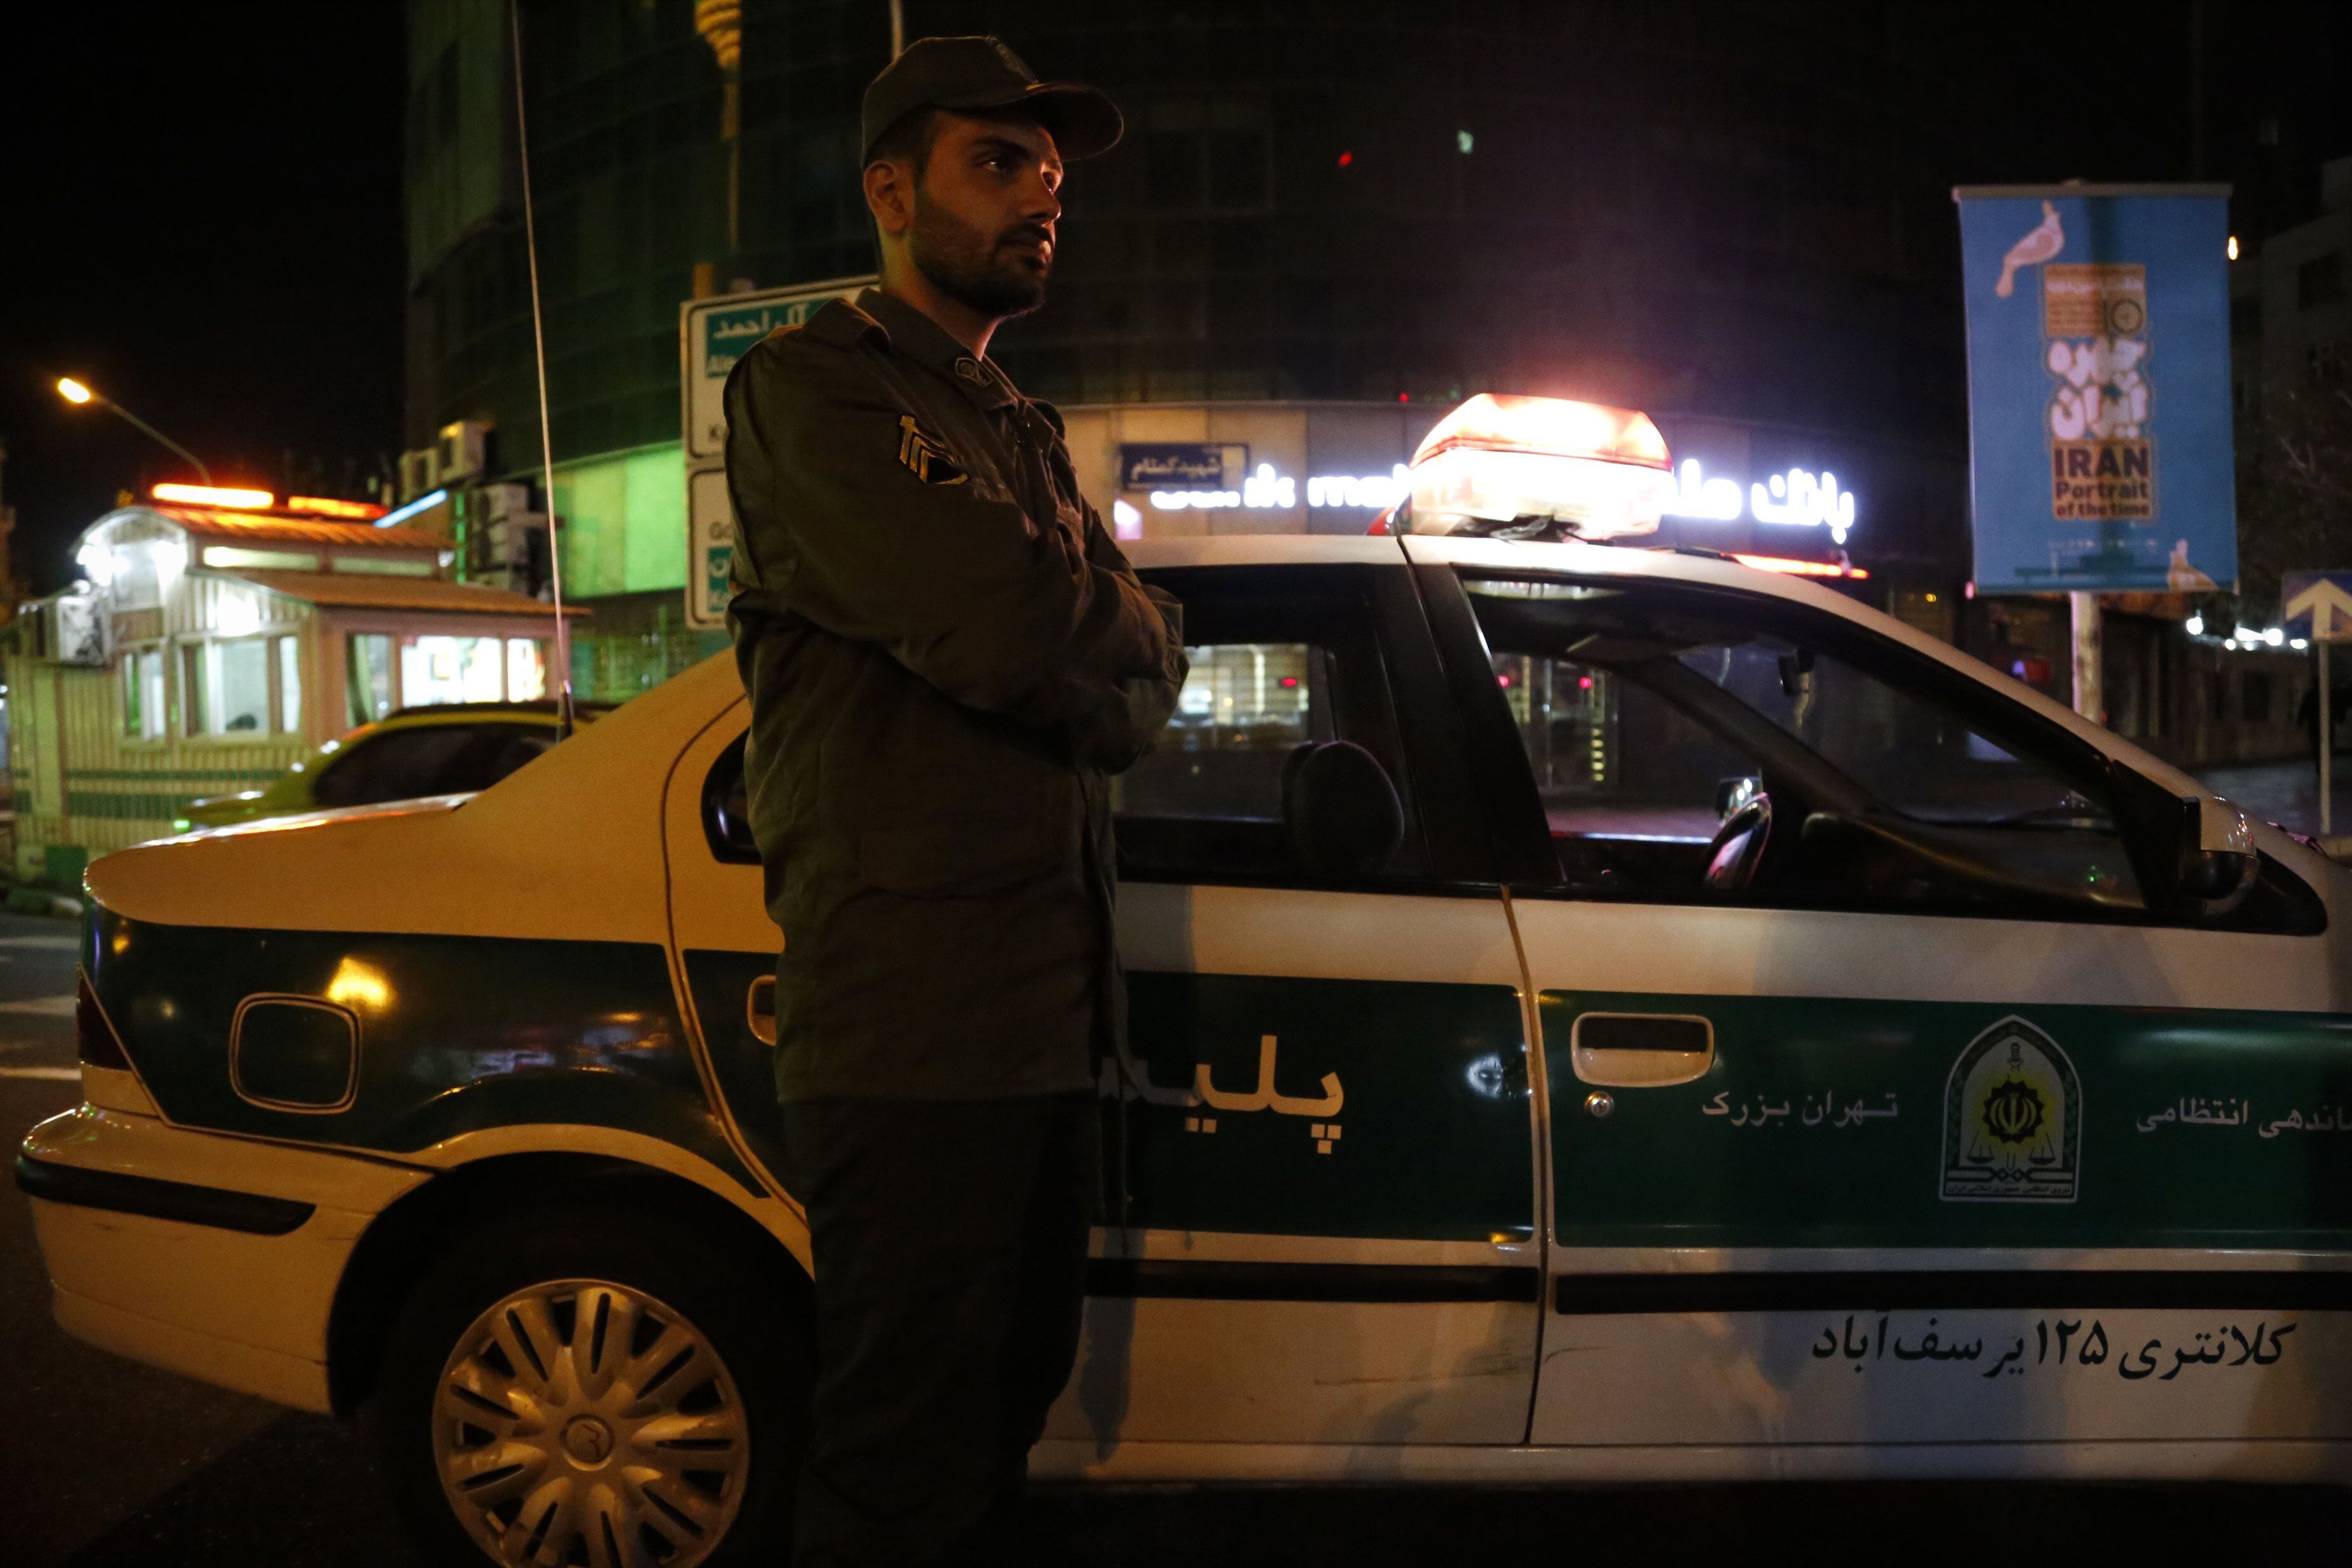 16/10/2022 Un agente de la Policía en Teherán, IránPOLITICA ASIA IRÁNROUZBEH FOULADI / ZUMA PRESS / CONTACTOPHOTO